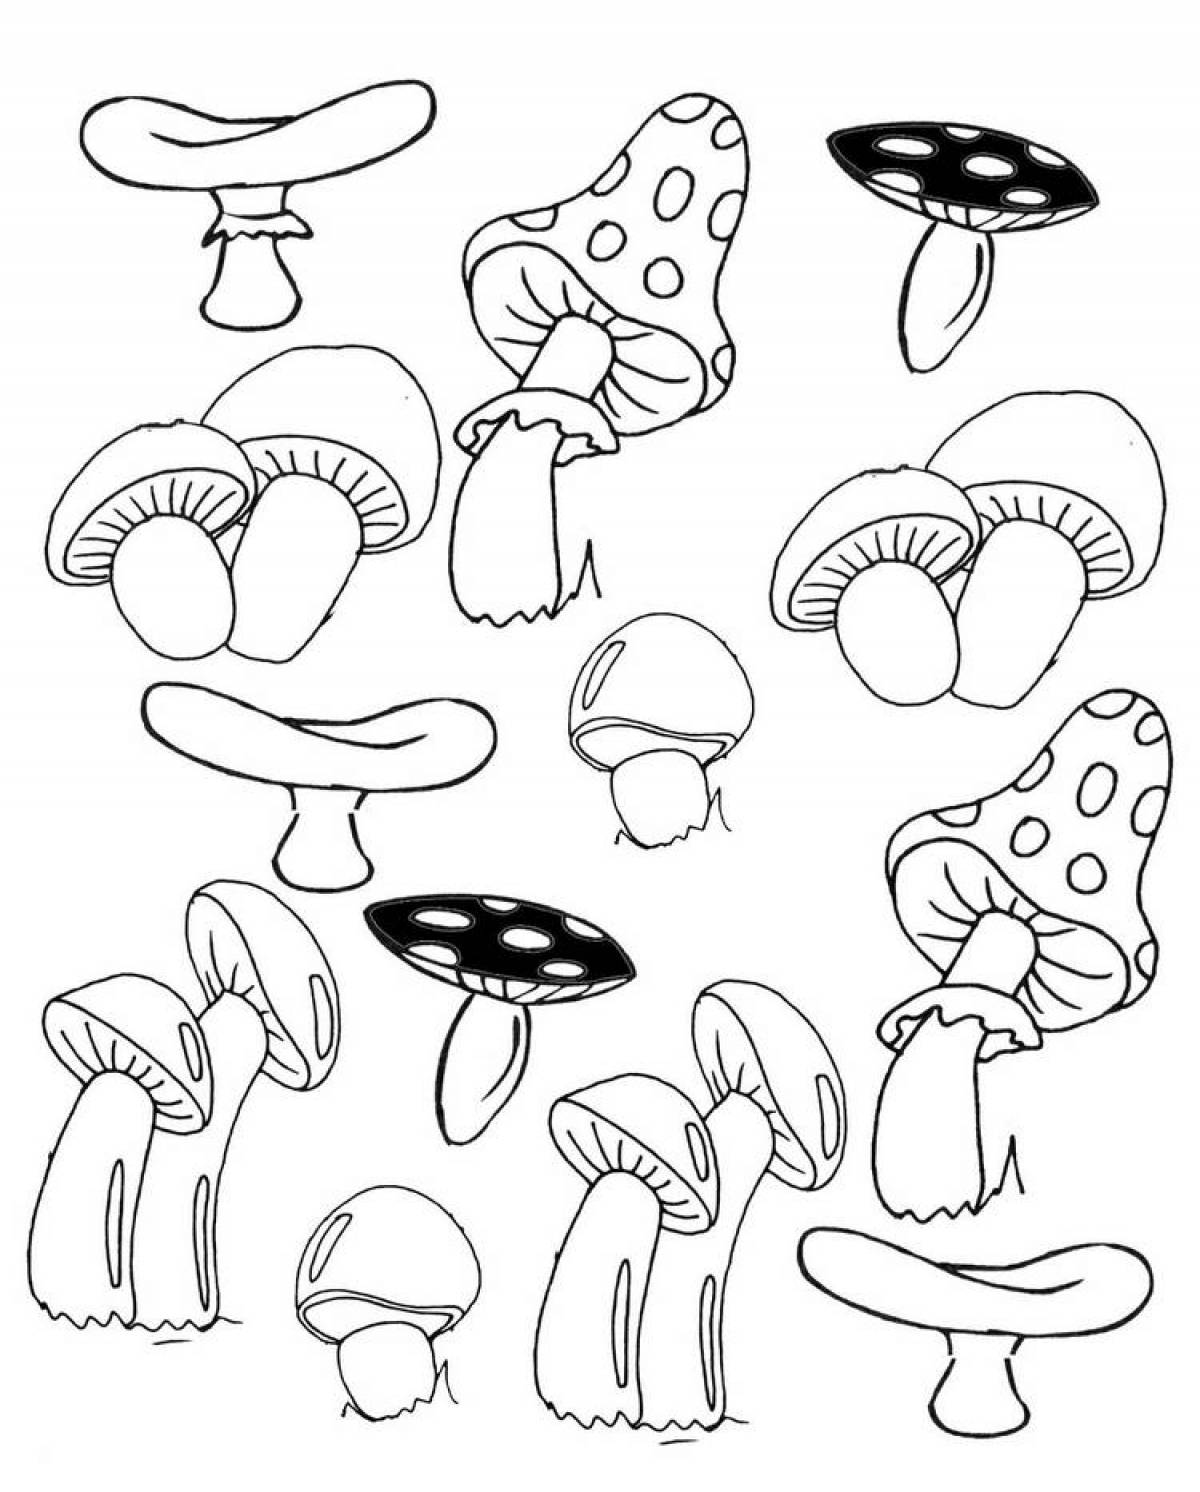 Веселая раскраска грибов для детей